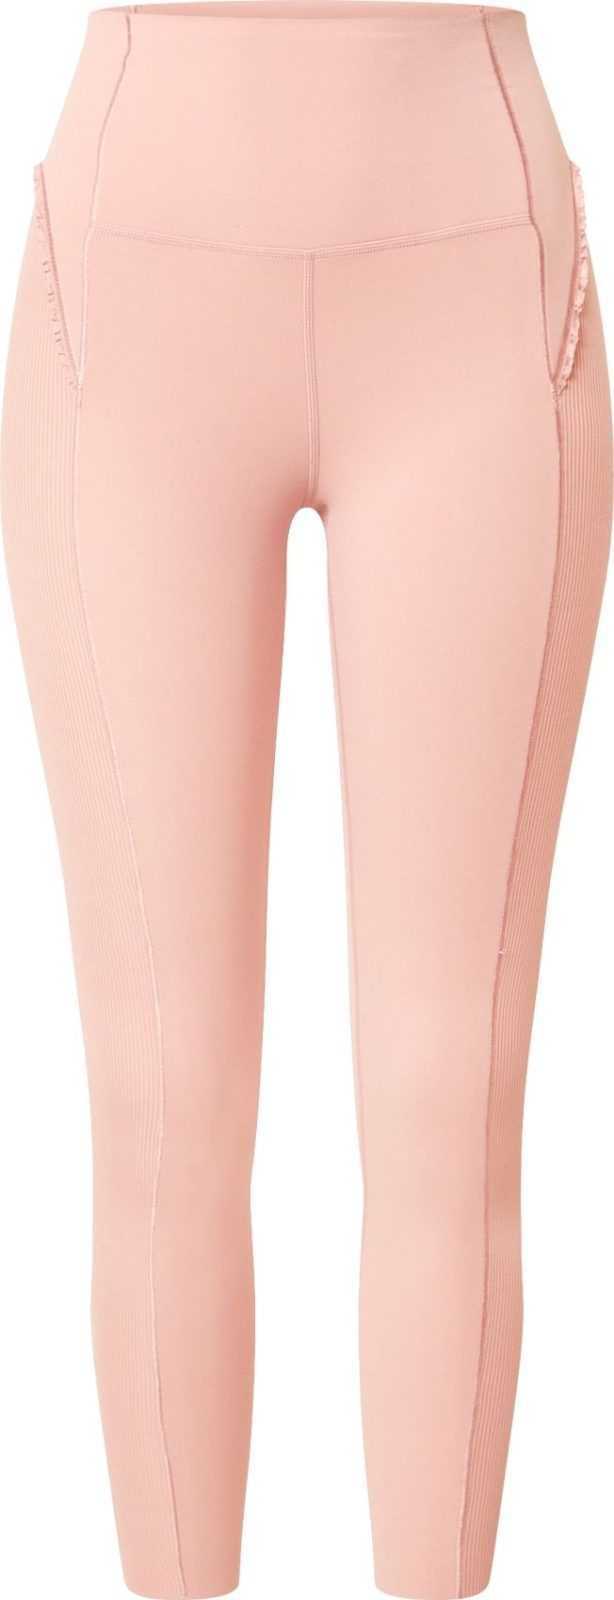 NIKE Sportovní kalhoty 'Yoga' pastelově růžová